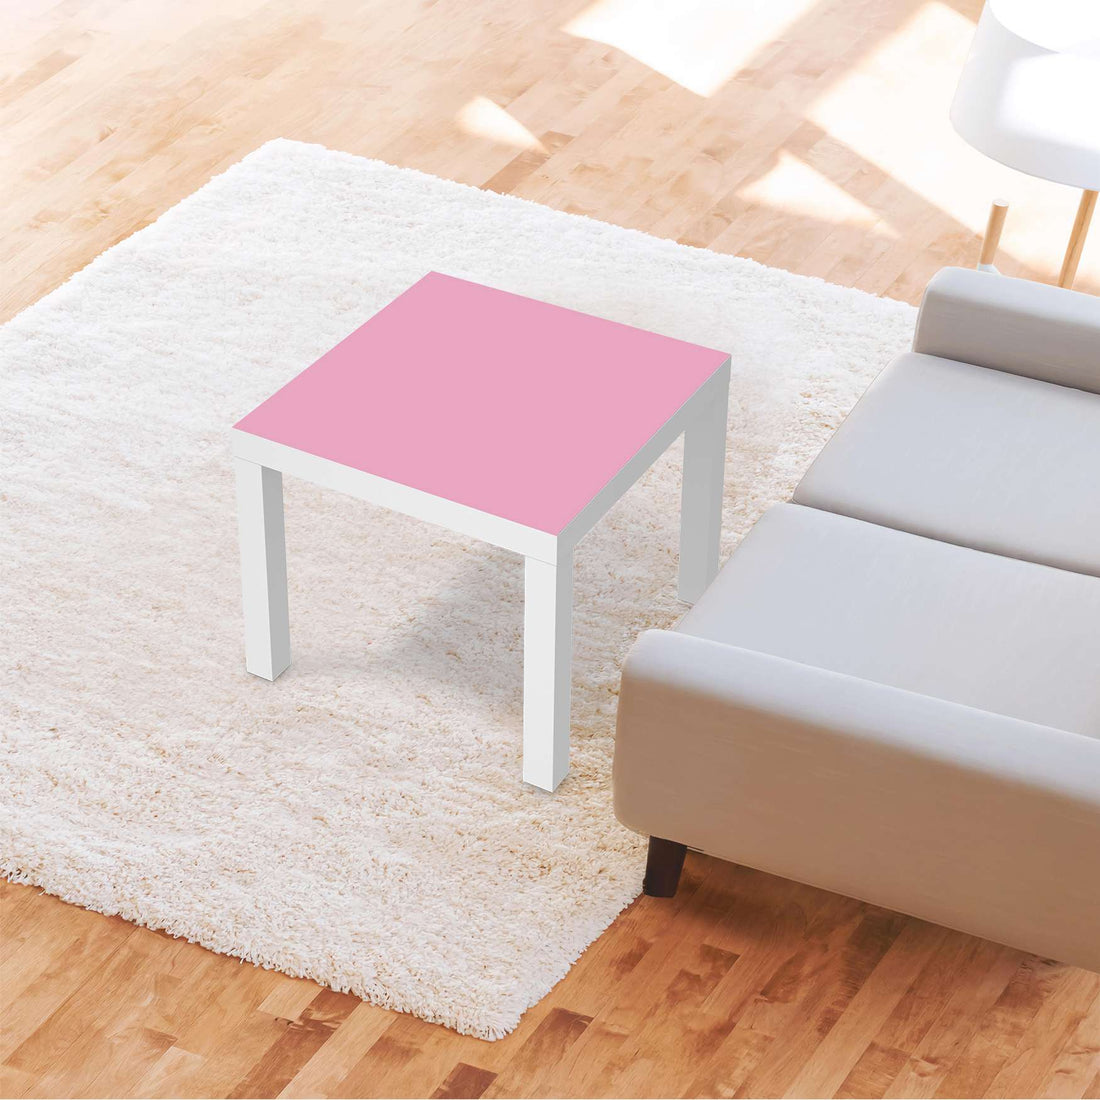 Möbelfolie Pink Light - IKEA Lack Tisch 55x55 cm - Wohnzimmer